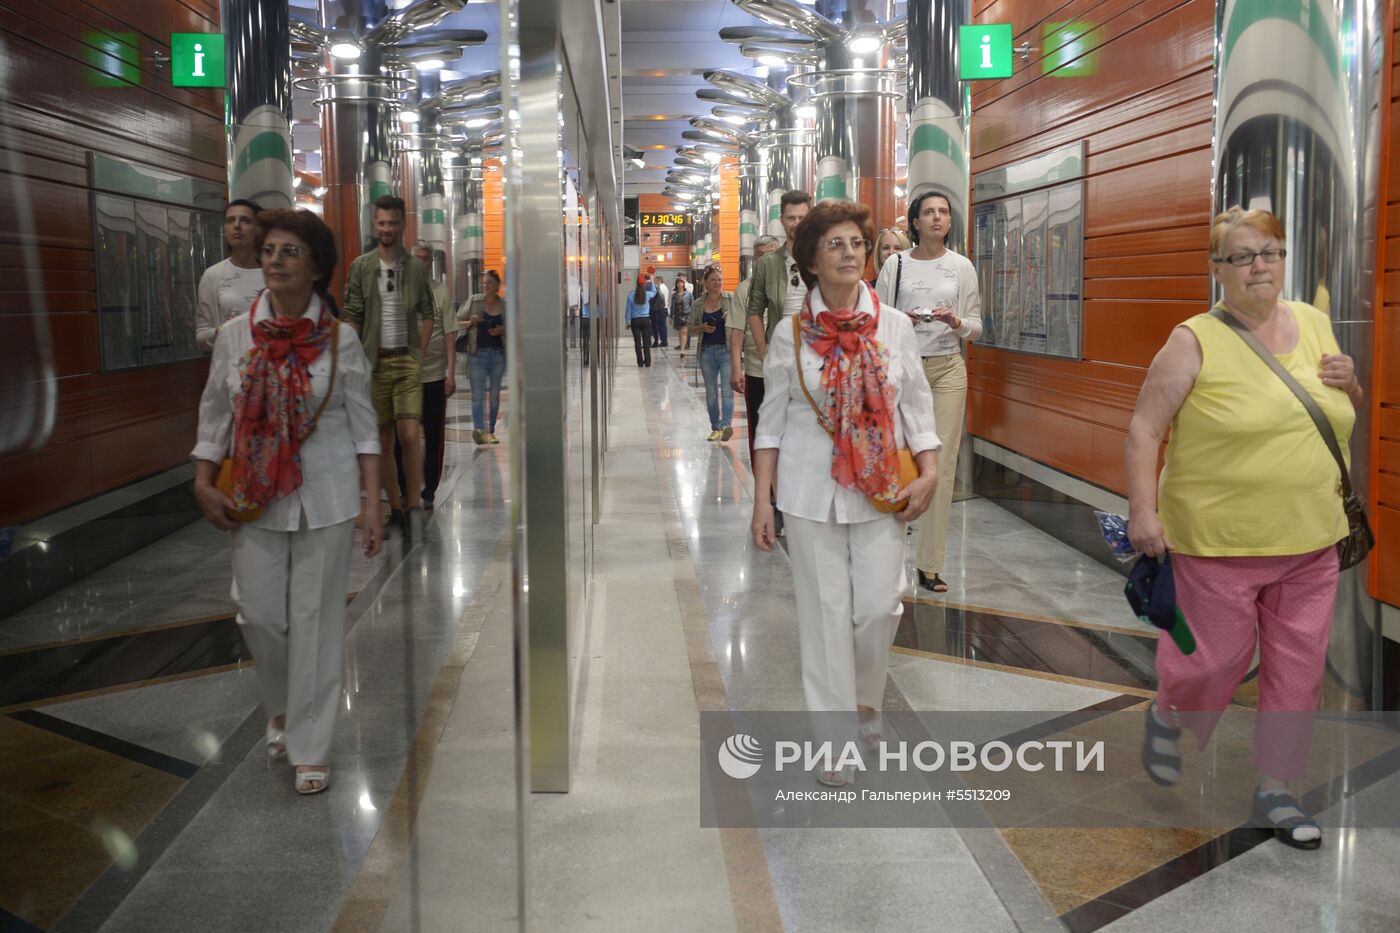 Открытие станций метро "Новокрестовская" и "Беговая" в Санкт-Петербурге